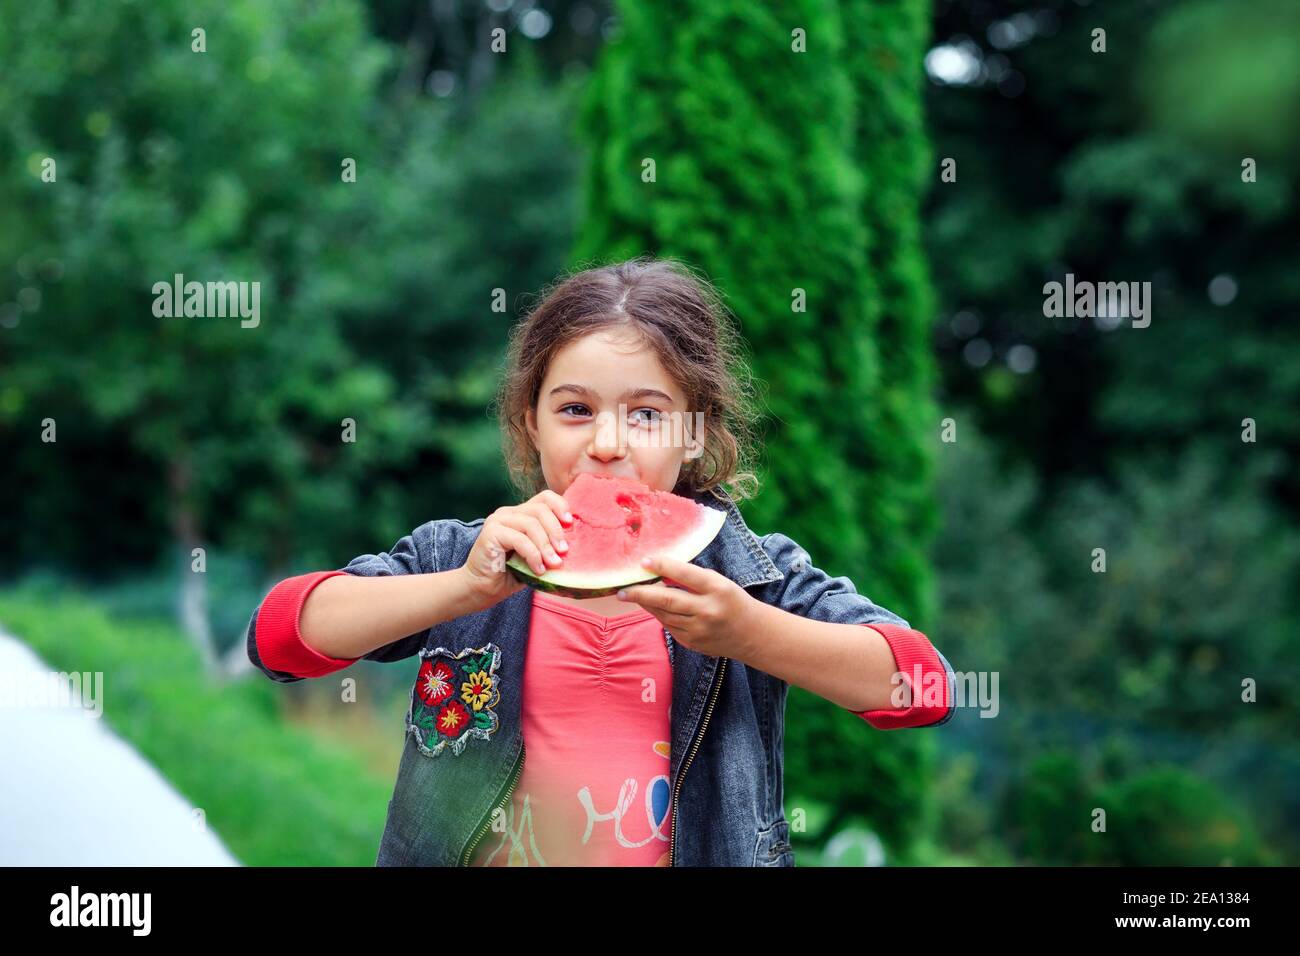 Kleines hübsches Mädchen, das im Garten eine saftige Wassermelone isst. Kinder essen Obst im Freien. Gesunde Ernährung für Kinder. Stockfoto